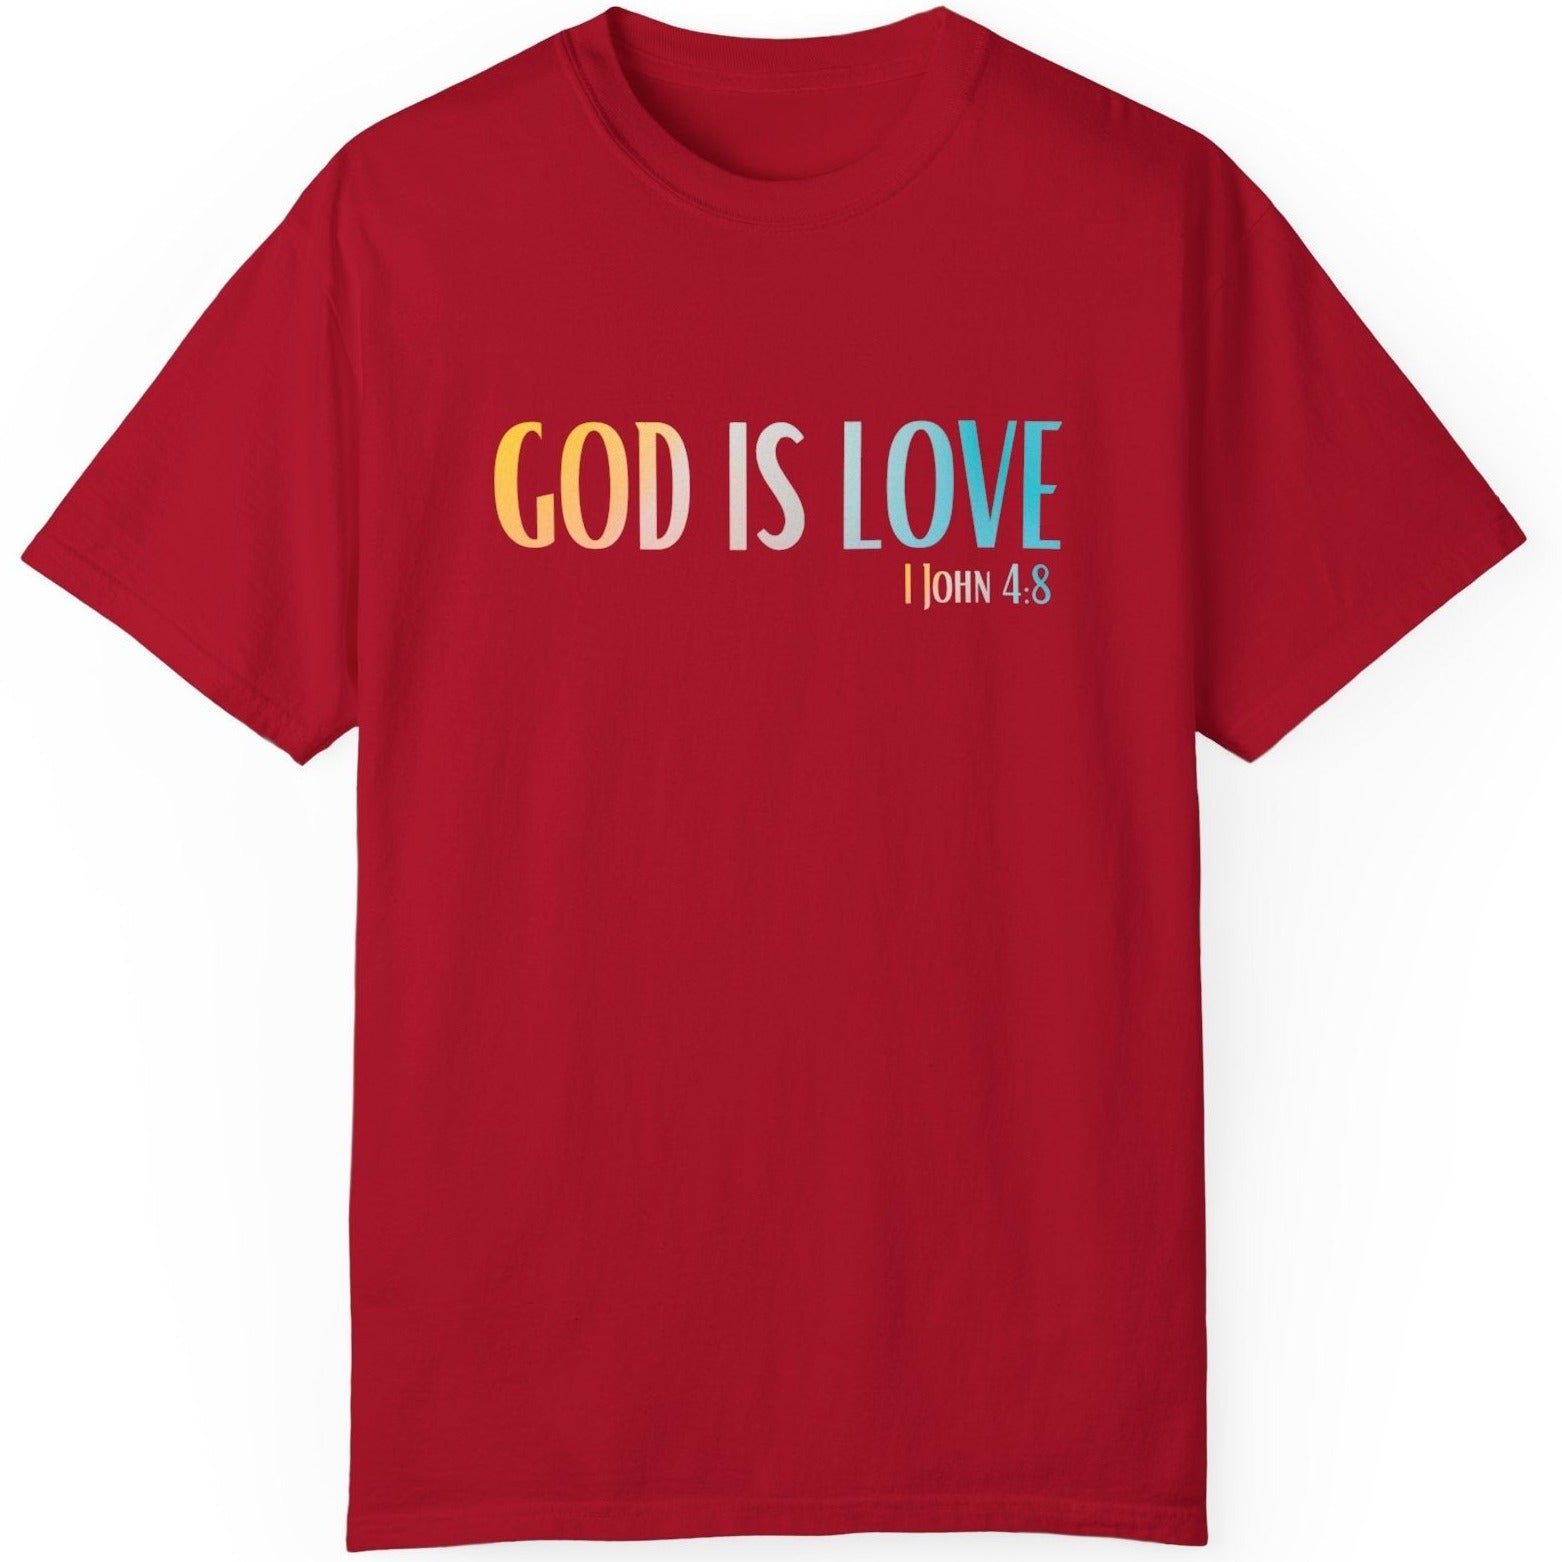 1 John 4:8 God is Love, Christian Garment-Dyed T-shirt for men and women red